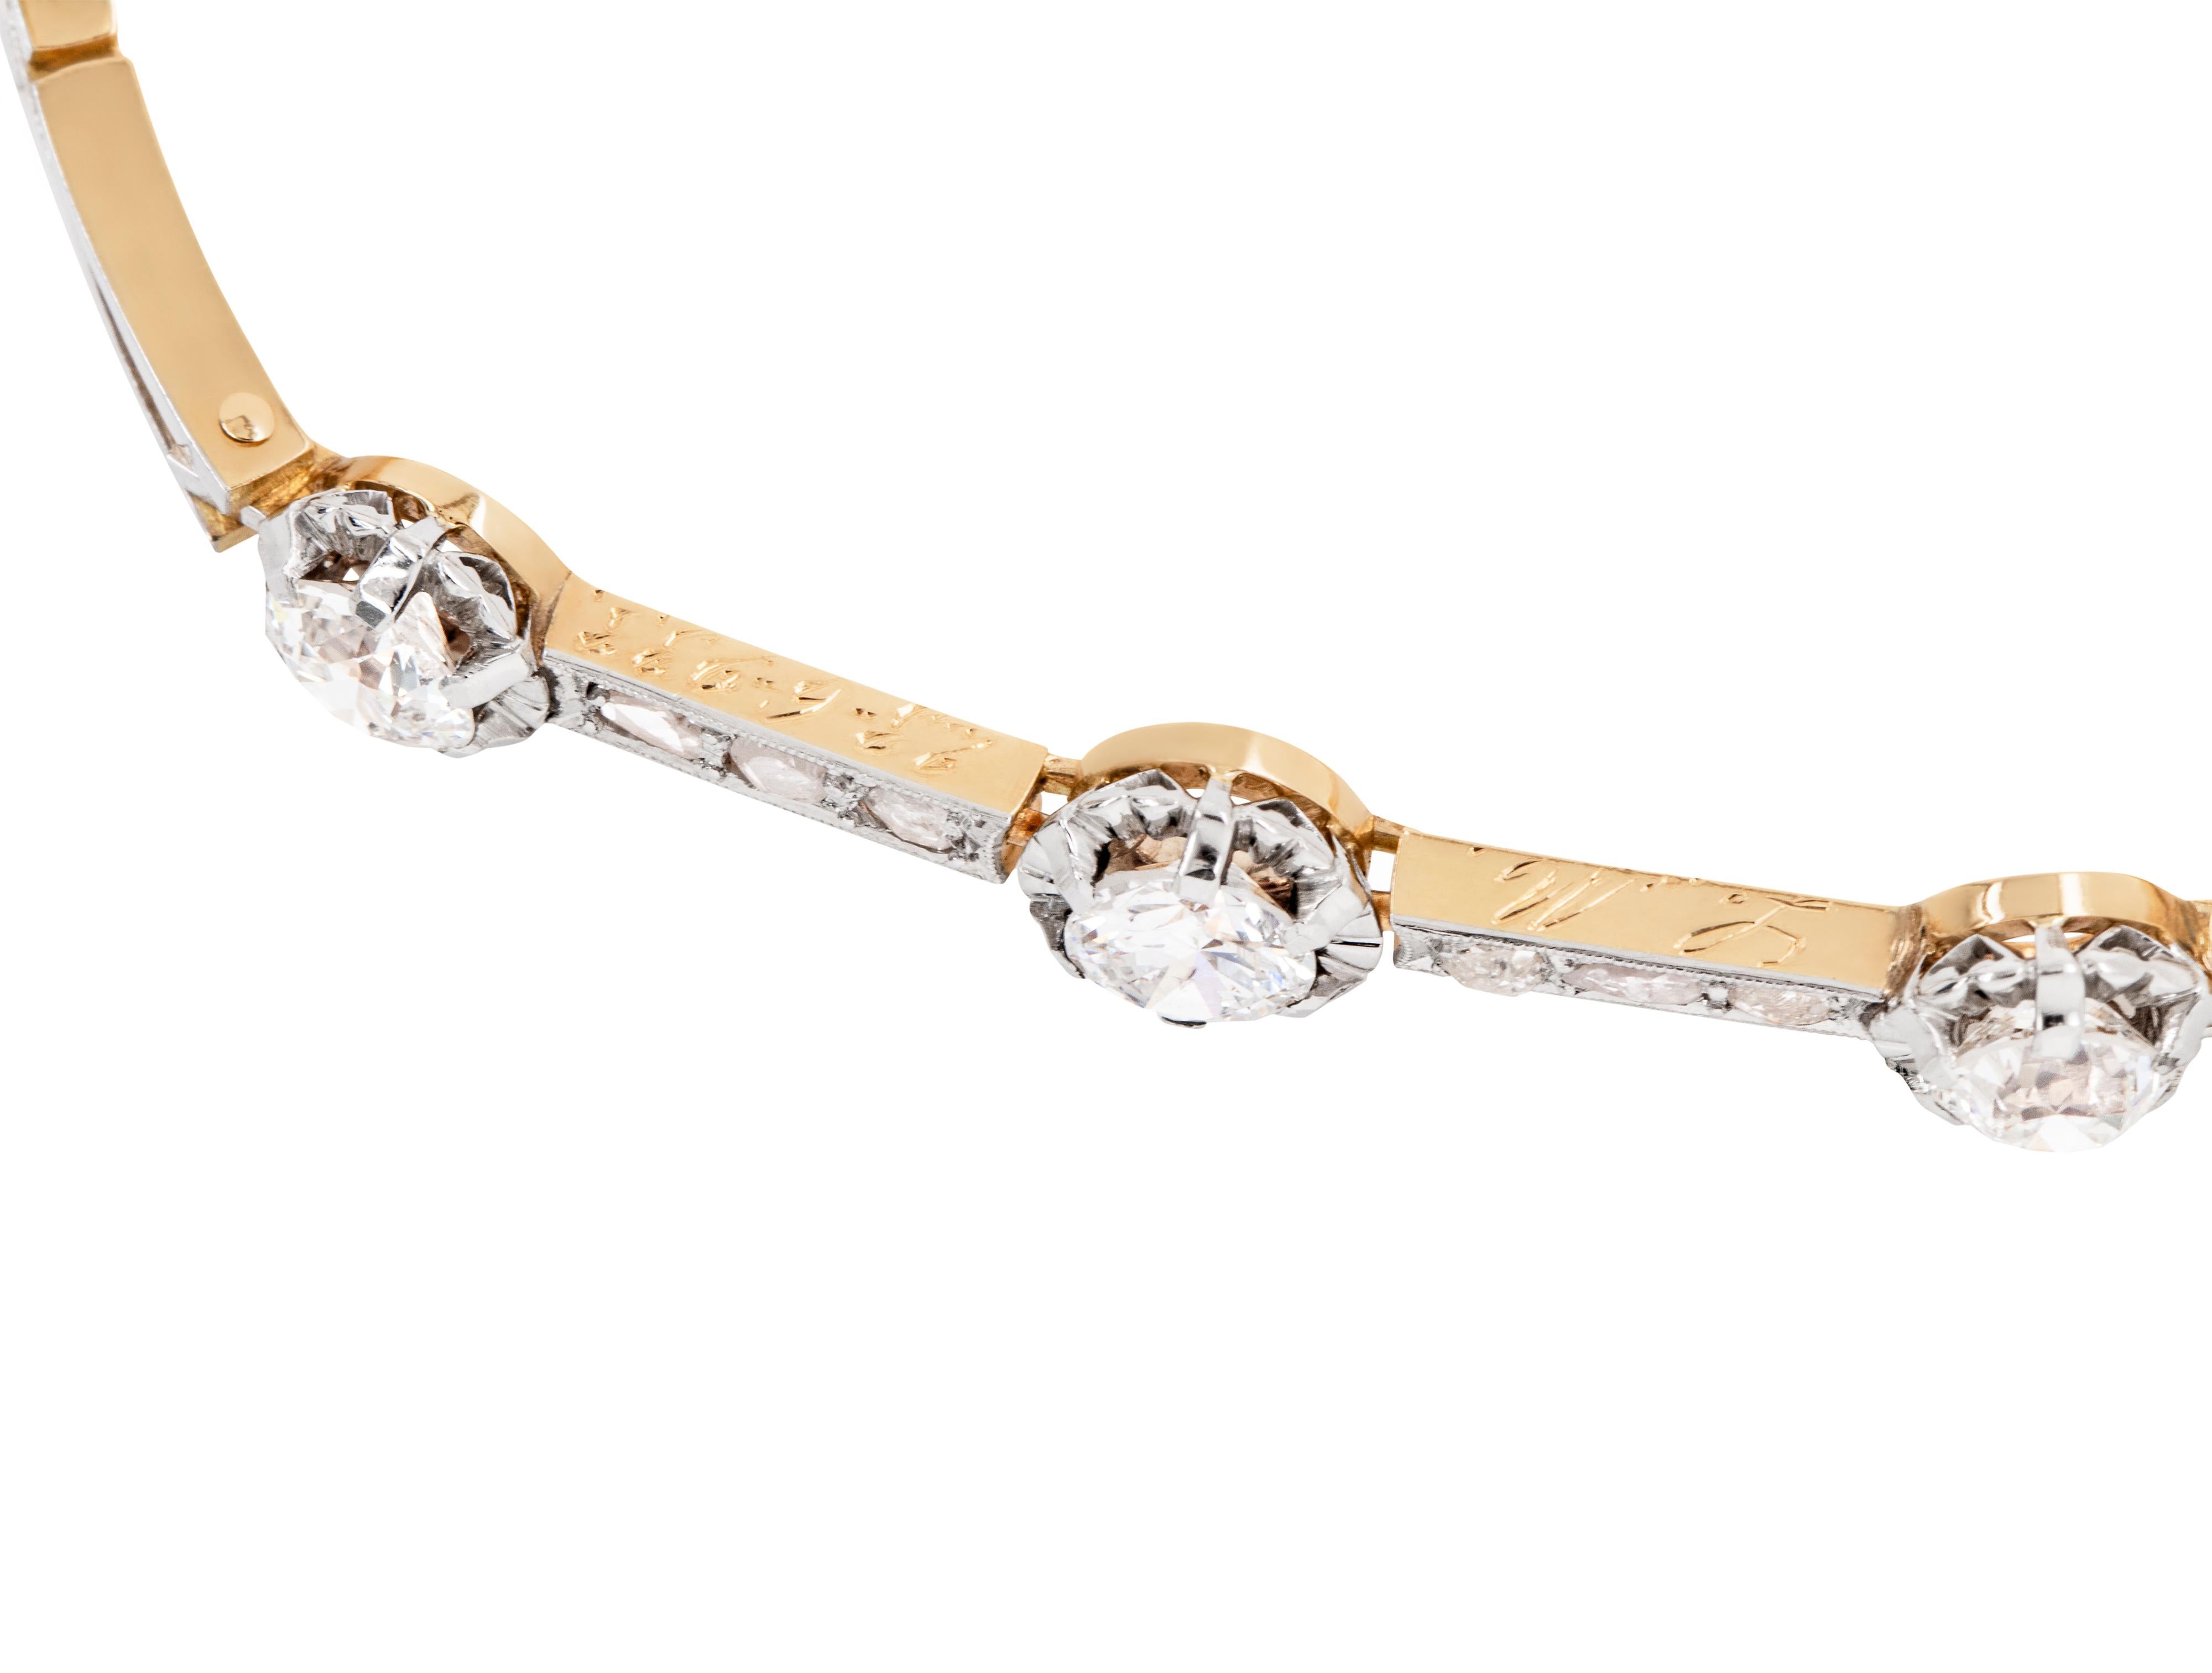 Dieses atemberaubende Armband besteht aus drei großen, altgeschliffenen Diamanten mit einem Gesamtgewicht von ca. 1,50 Karat, die jeweils in einer für die edwardianische Zeit typischen Illusionsfassung aus Platin gefasst sind. Zwischen den Steinen